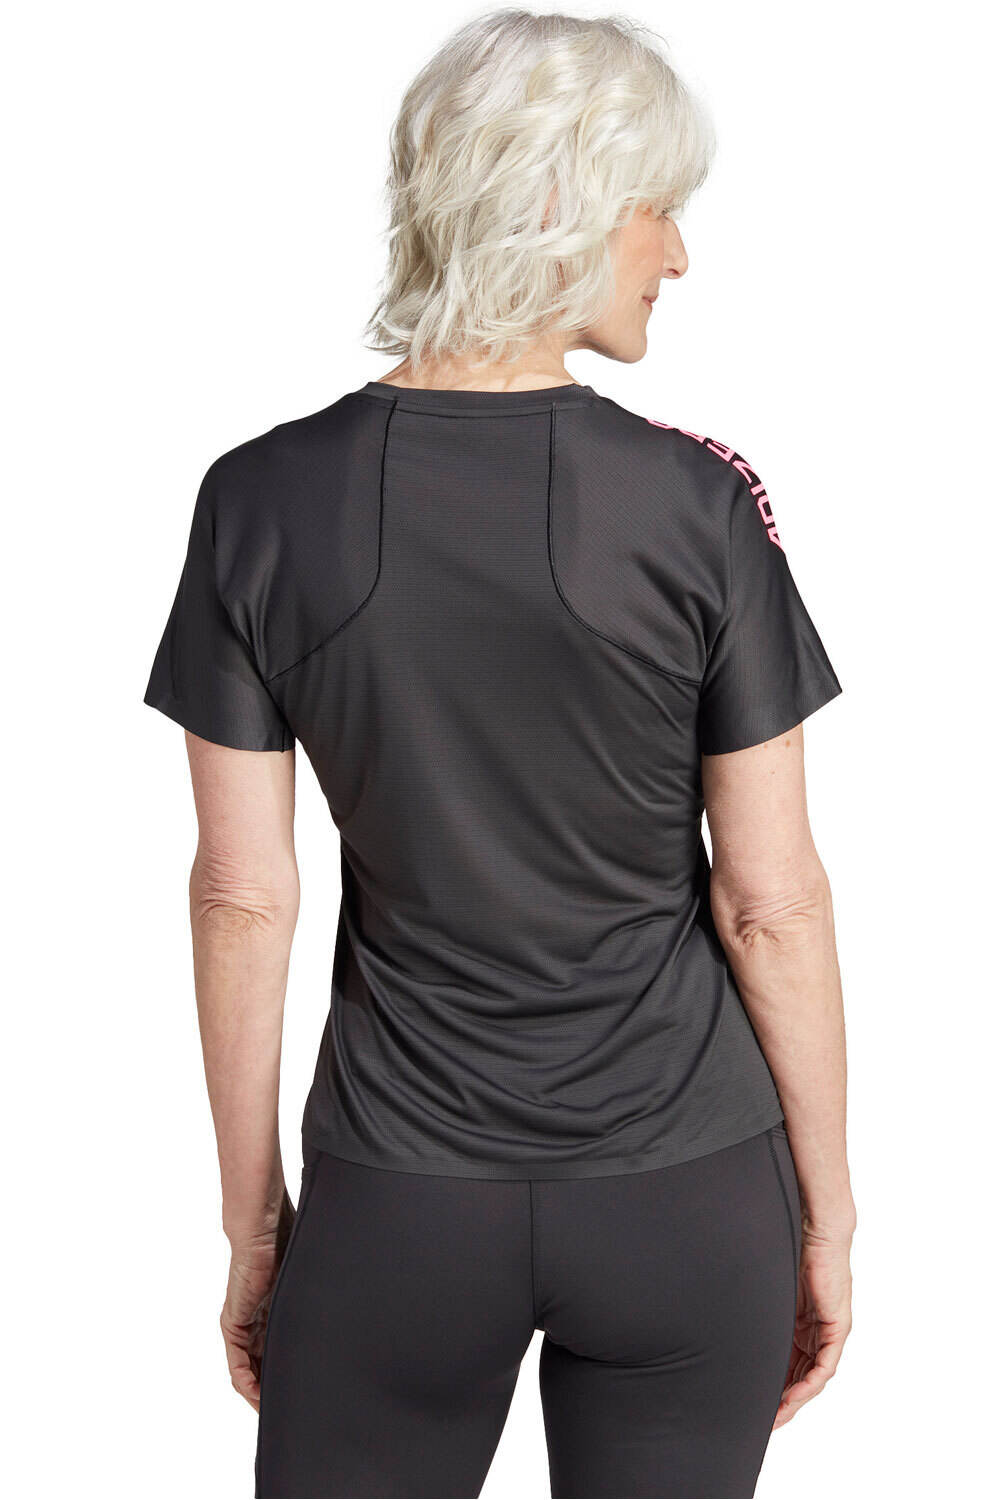 Adidas Adizero Running T-Shirt (HY6939) black - Ropa running